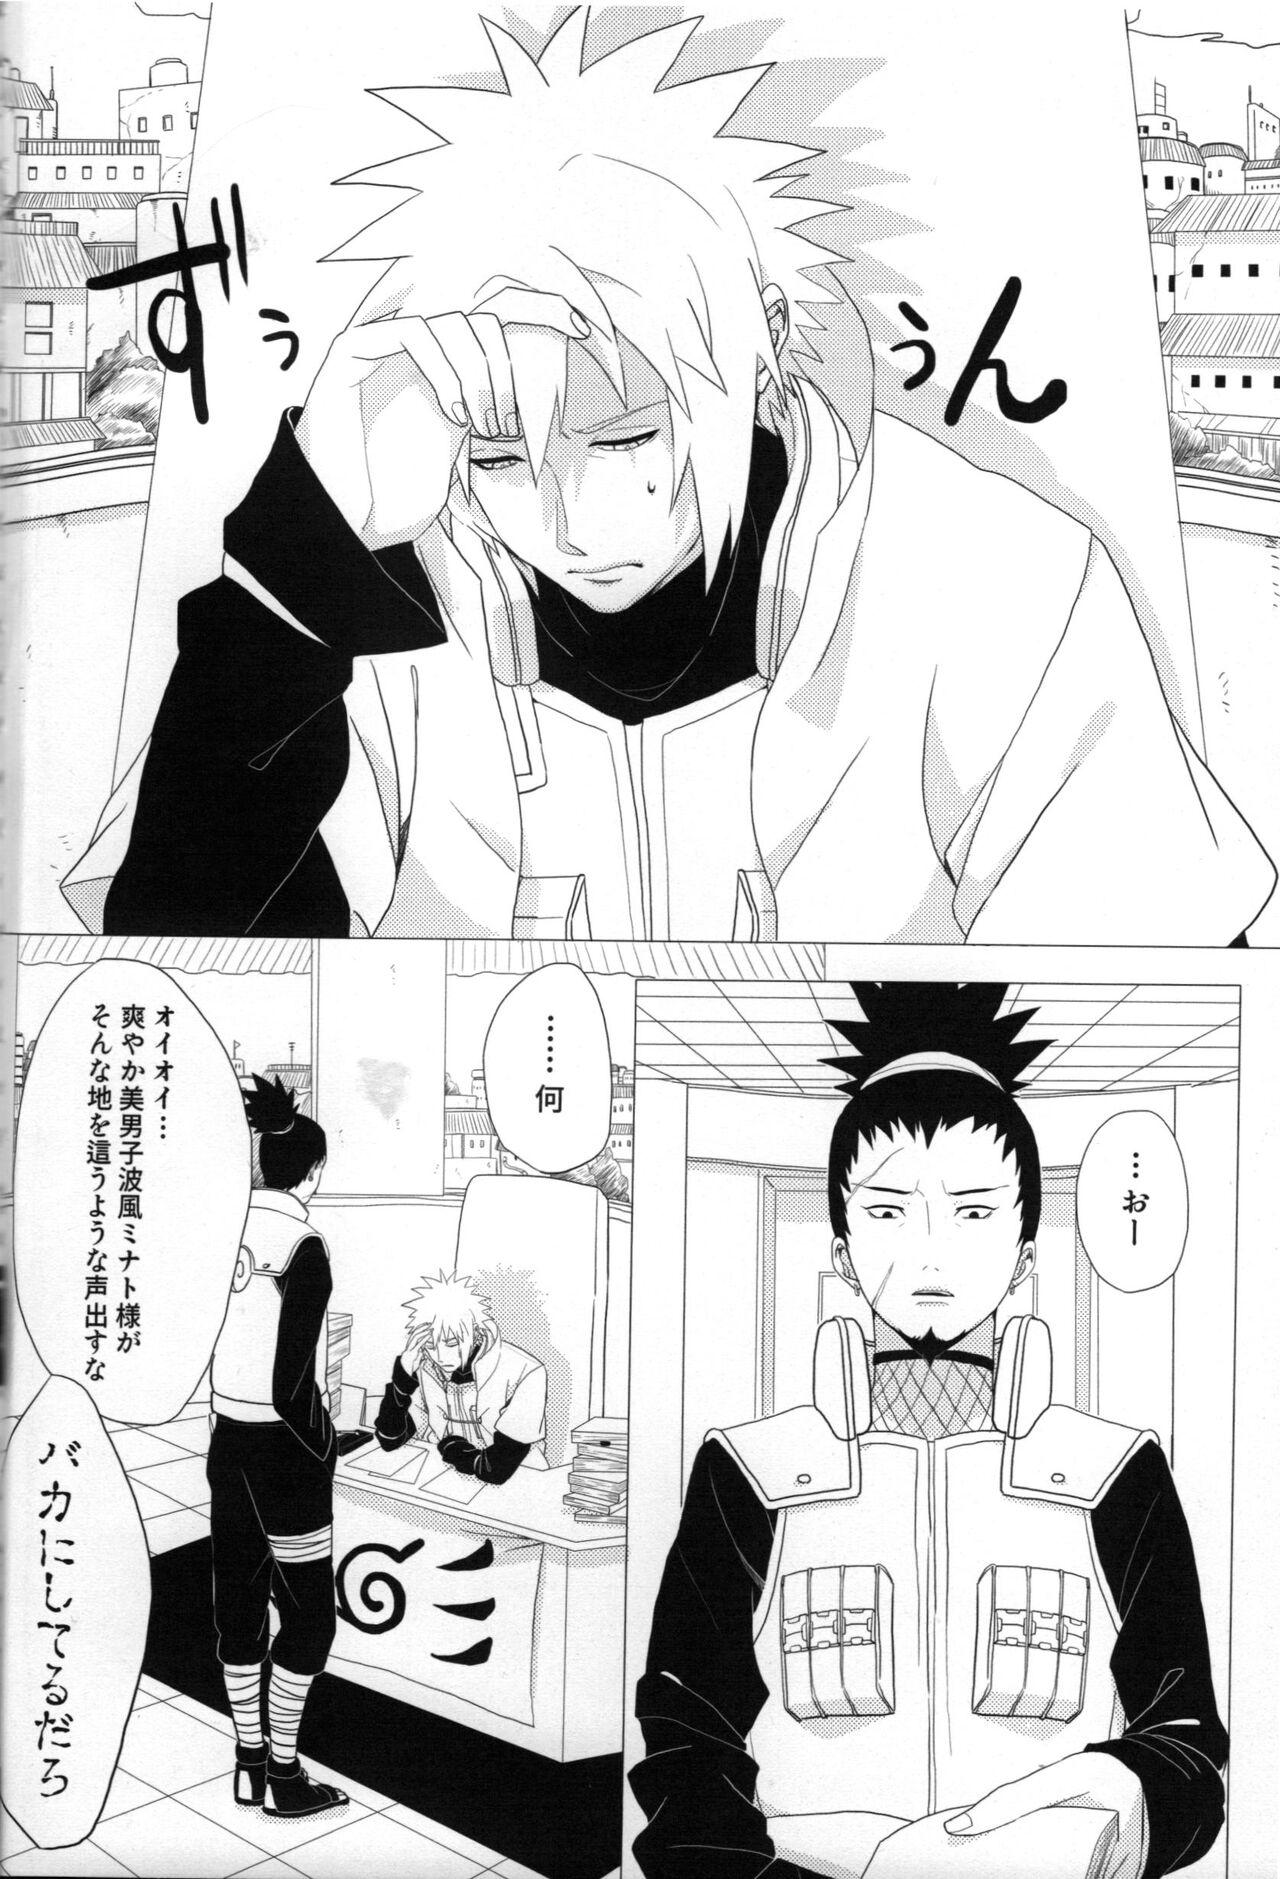 Pene Tada ichido yukinoshita ni uzumoreru - Naruto Gay Facial - Page 7